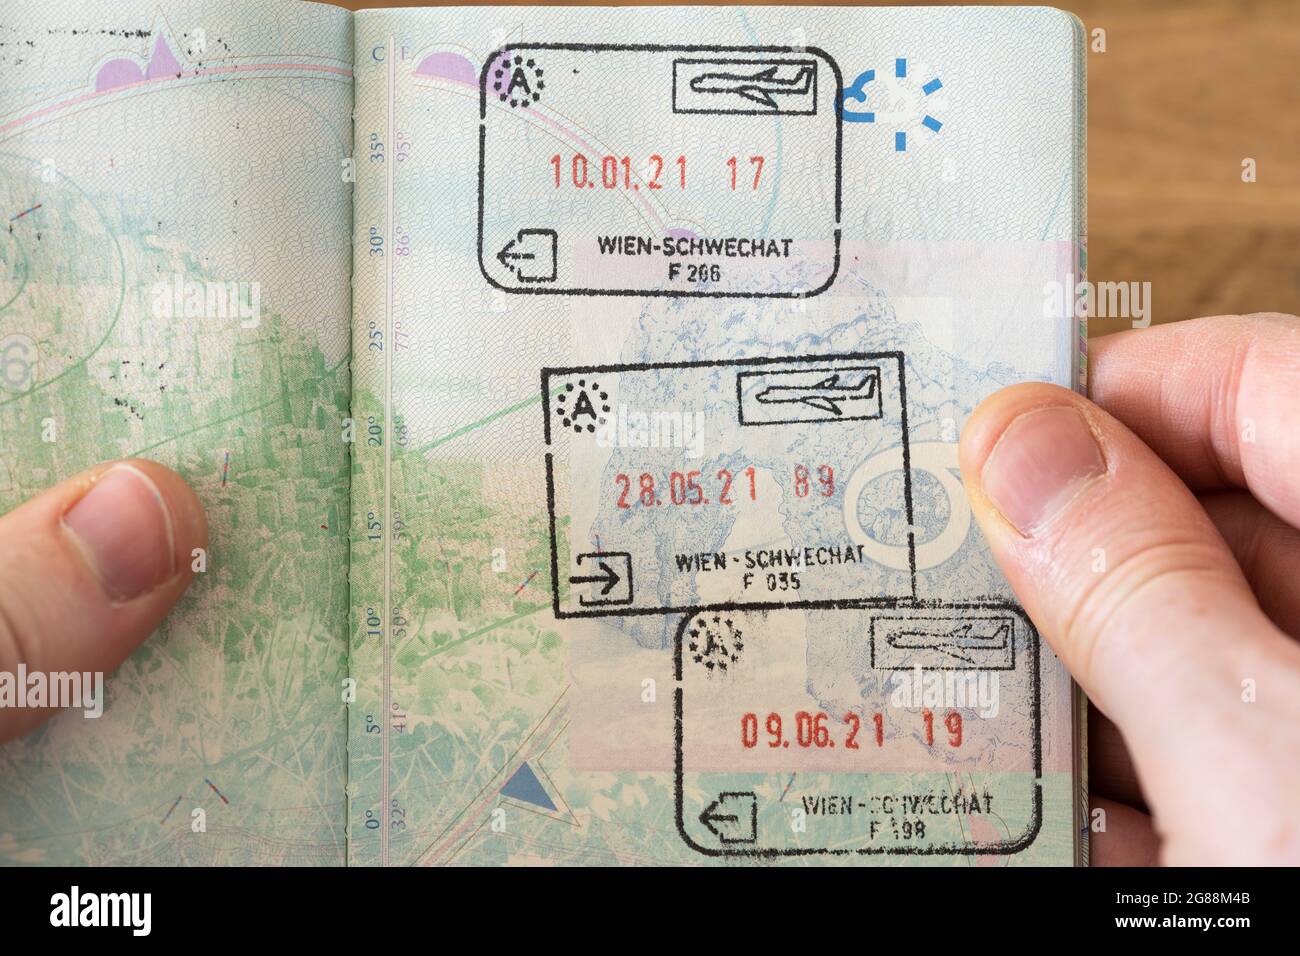 Timbres autrichiens d'entrée et de sortie dans un passeport britannique en 2021 après que le Royaume-Uni ait quitté l'espace Schengen de l'UE et soit devenu un pays tiers Banque D'Images